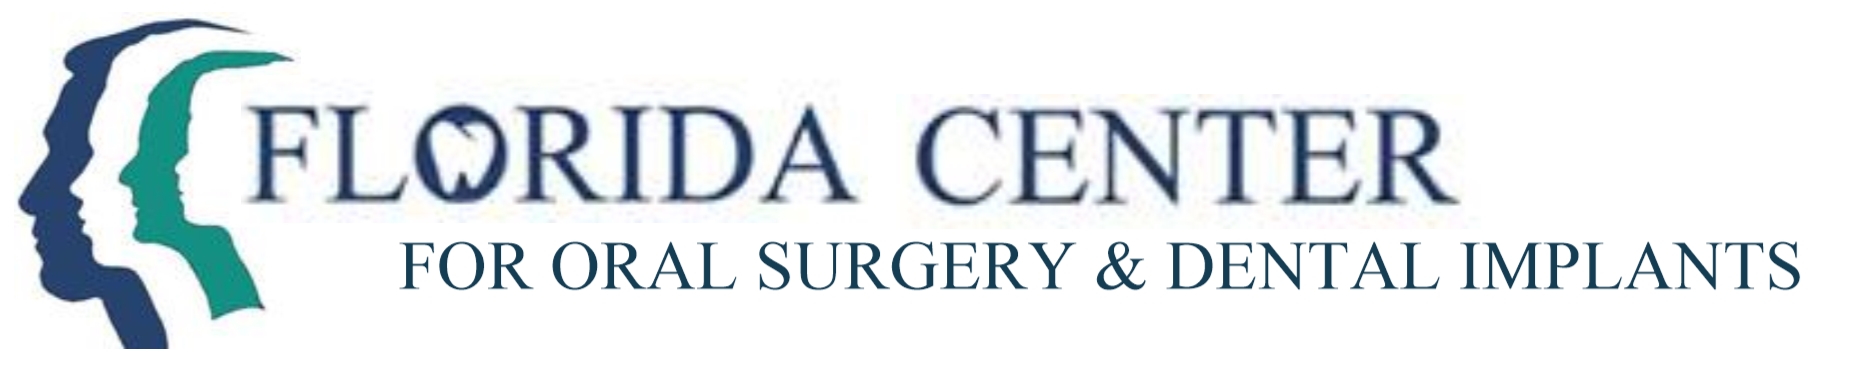 Florida Center For Dental Implants